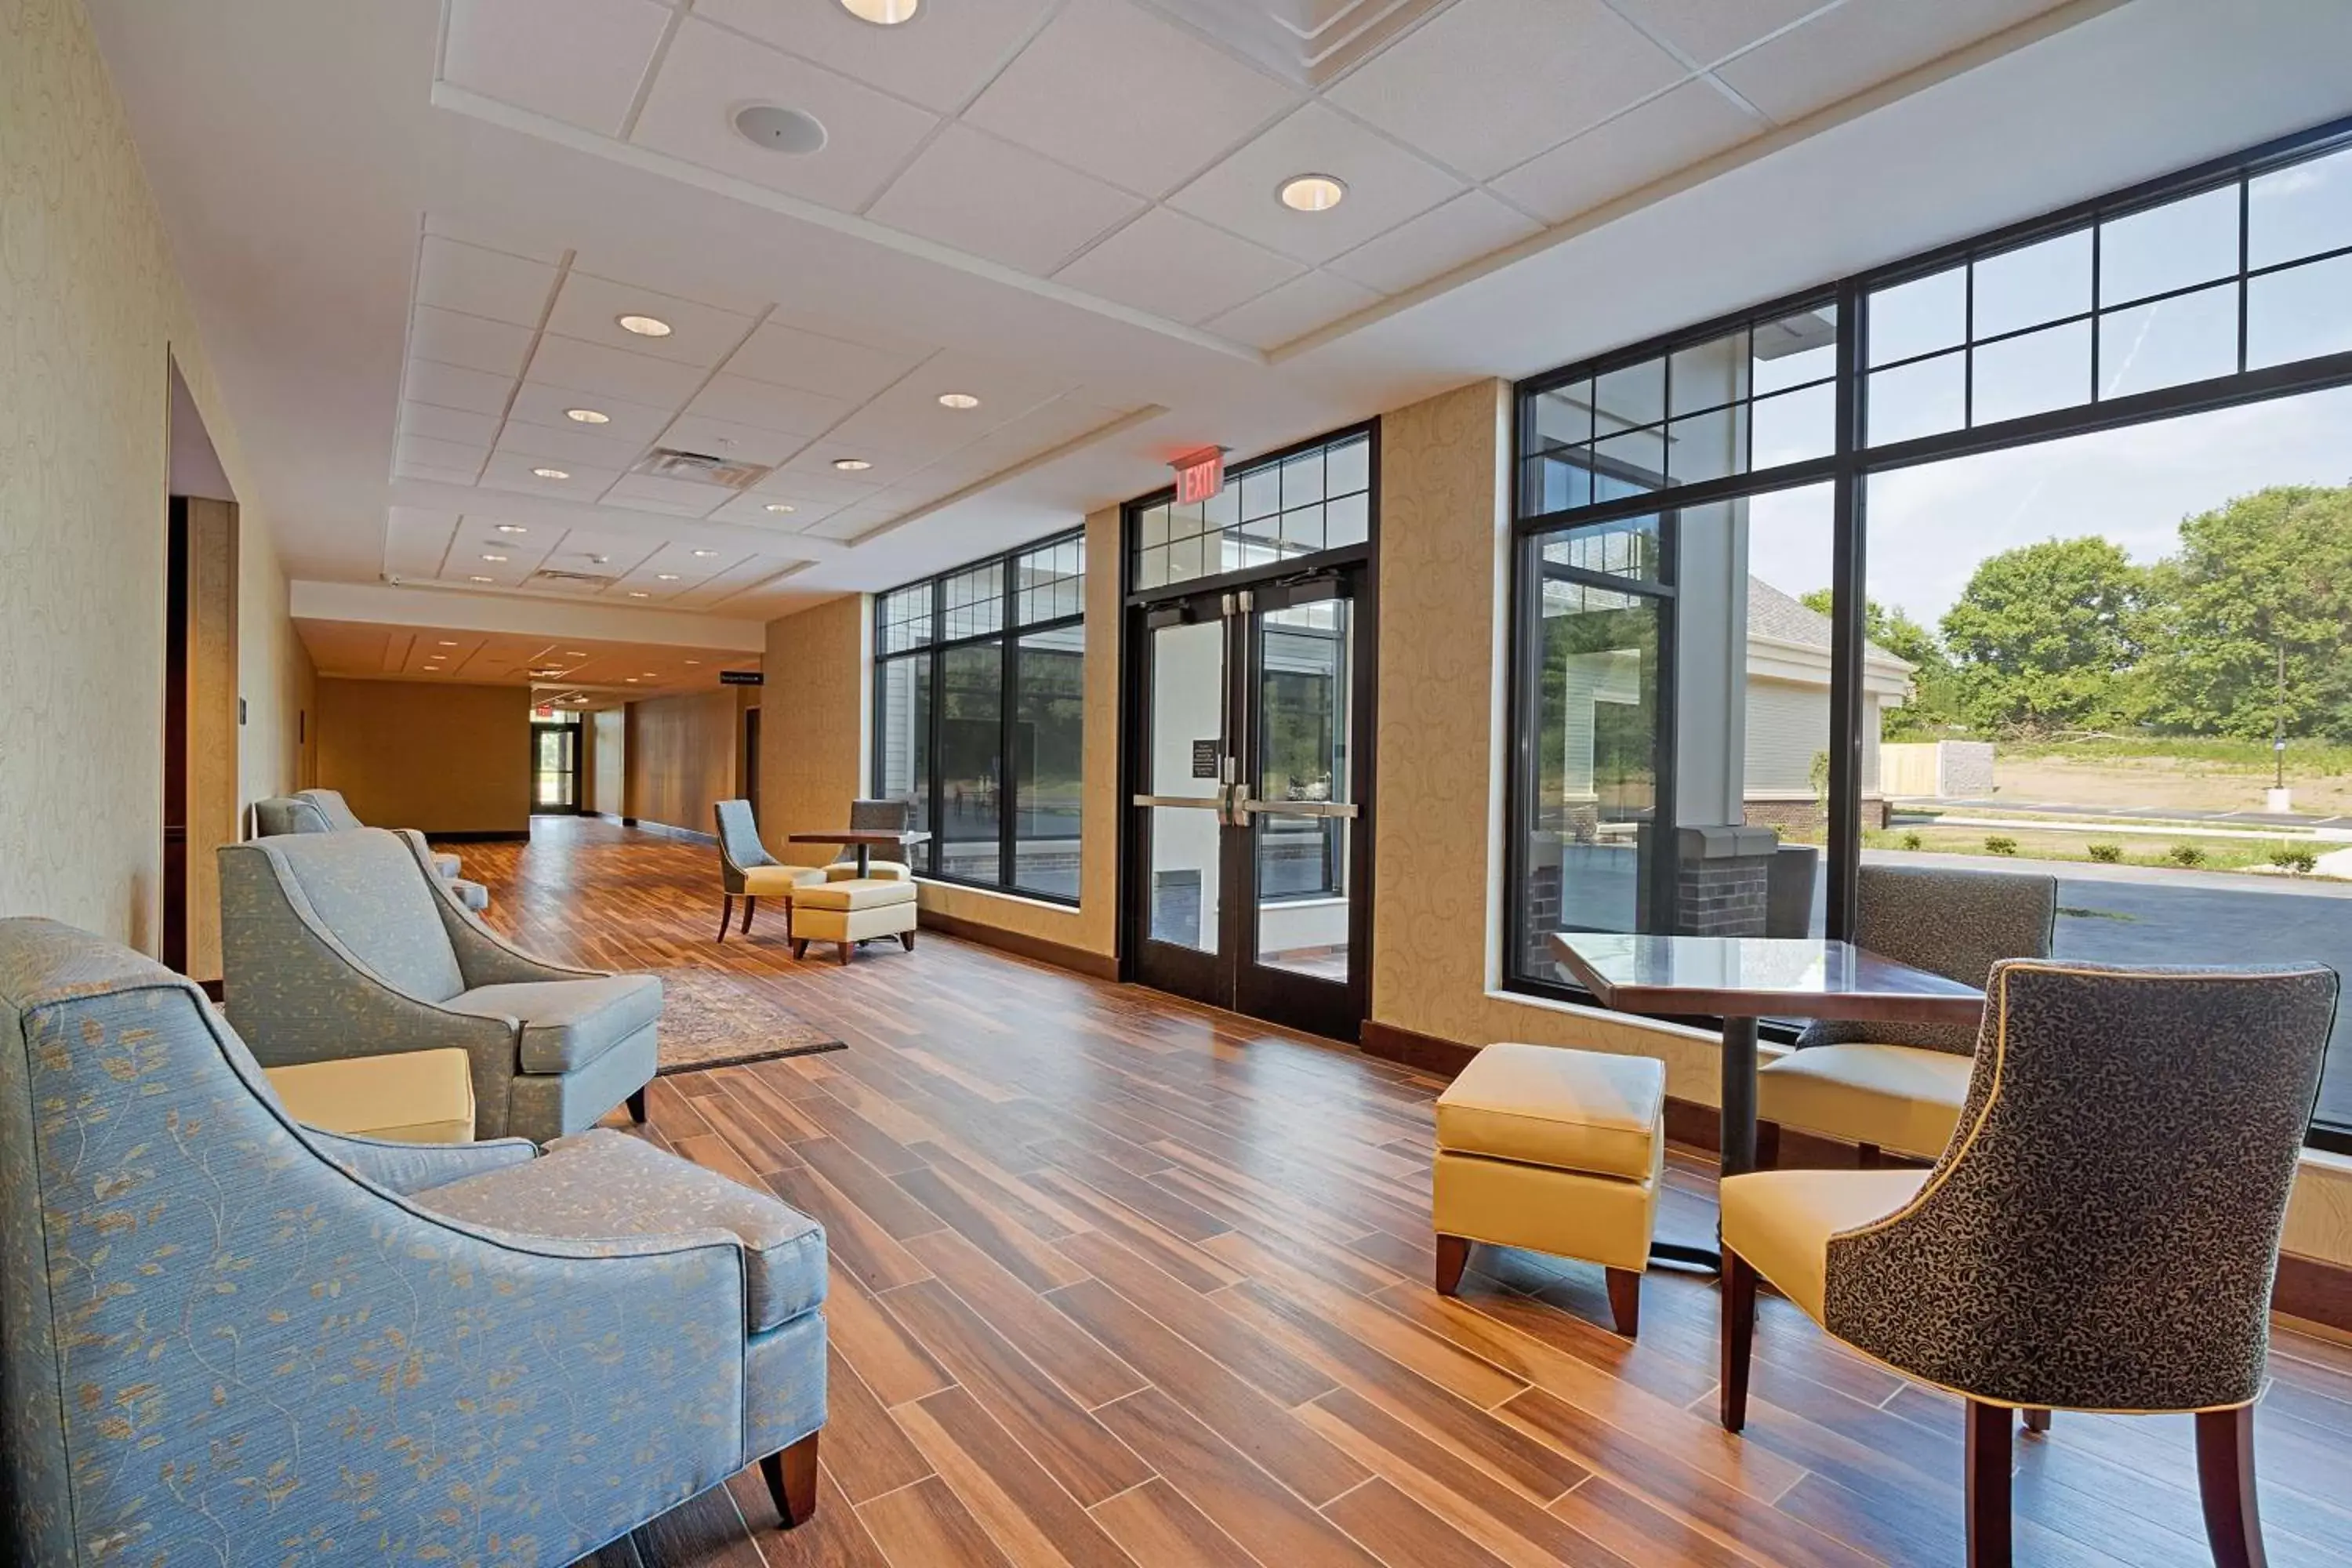 Lobby or reception, Lobby/Reception in Hampton Inn & Suites Cazenovia, NY